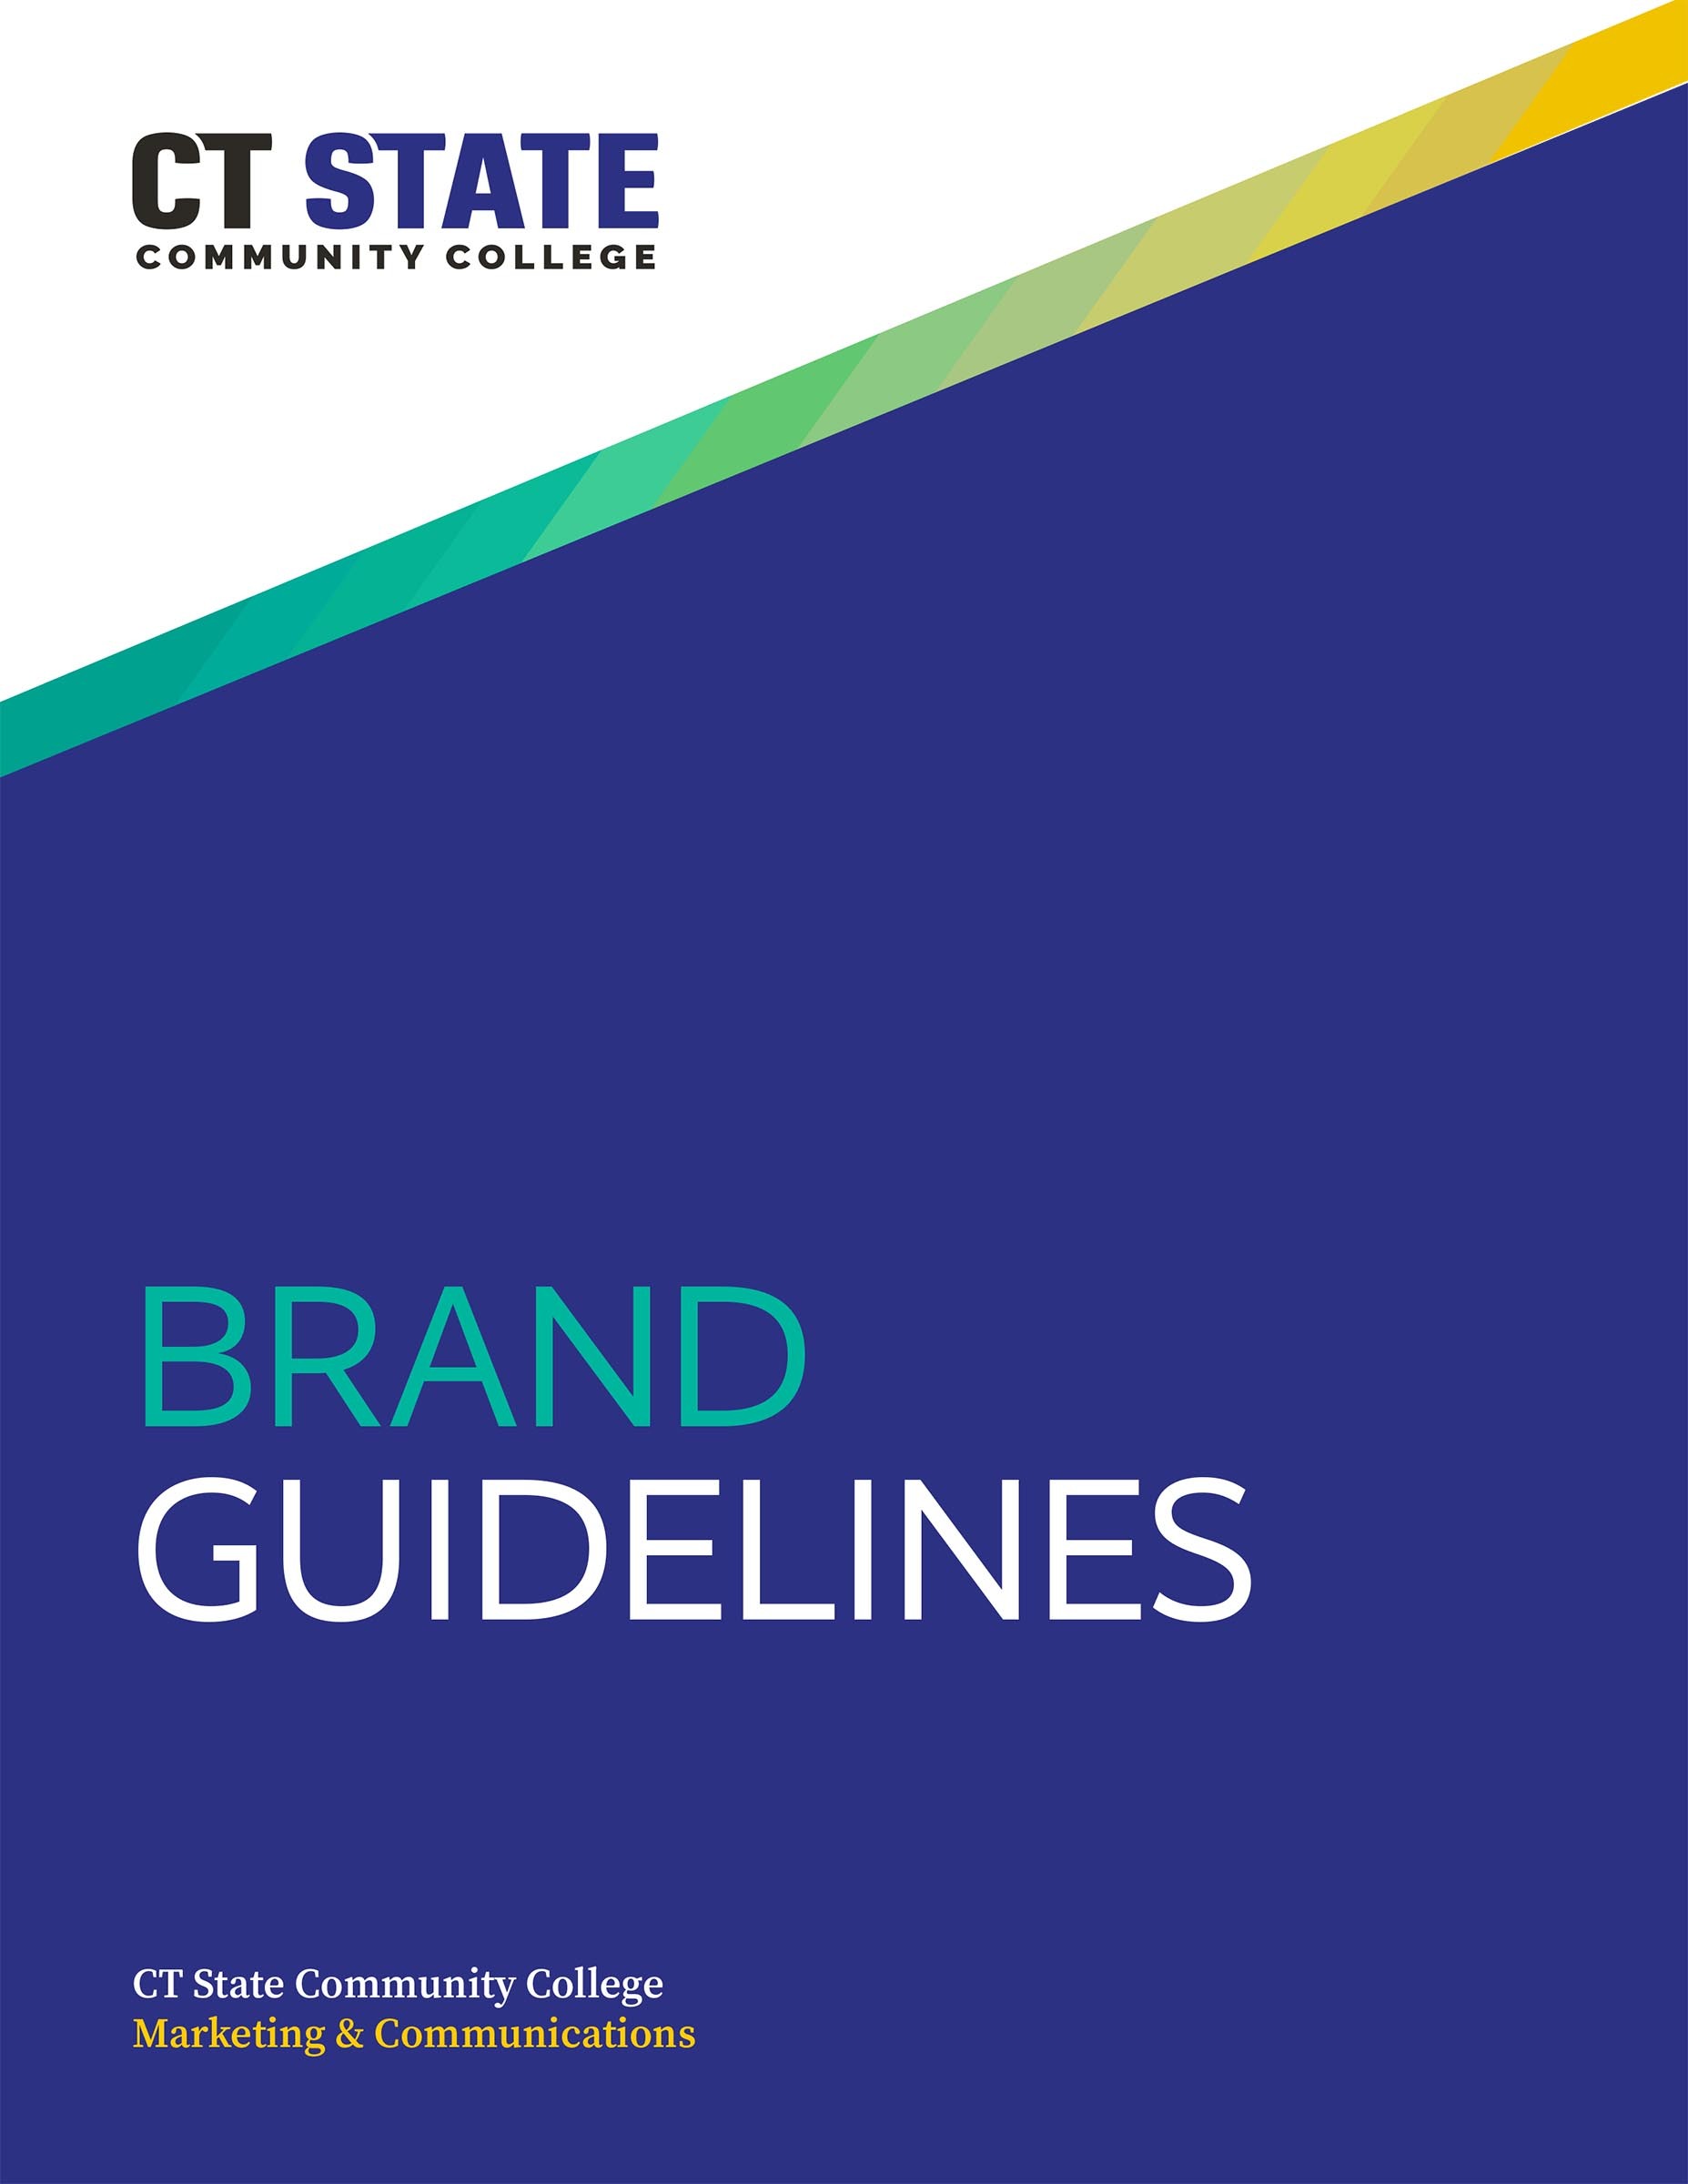 Branding Guidelines